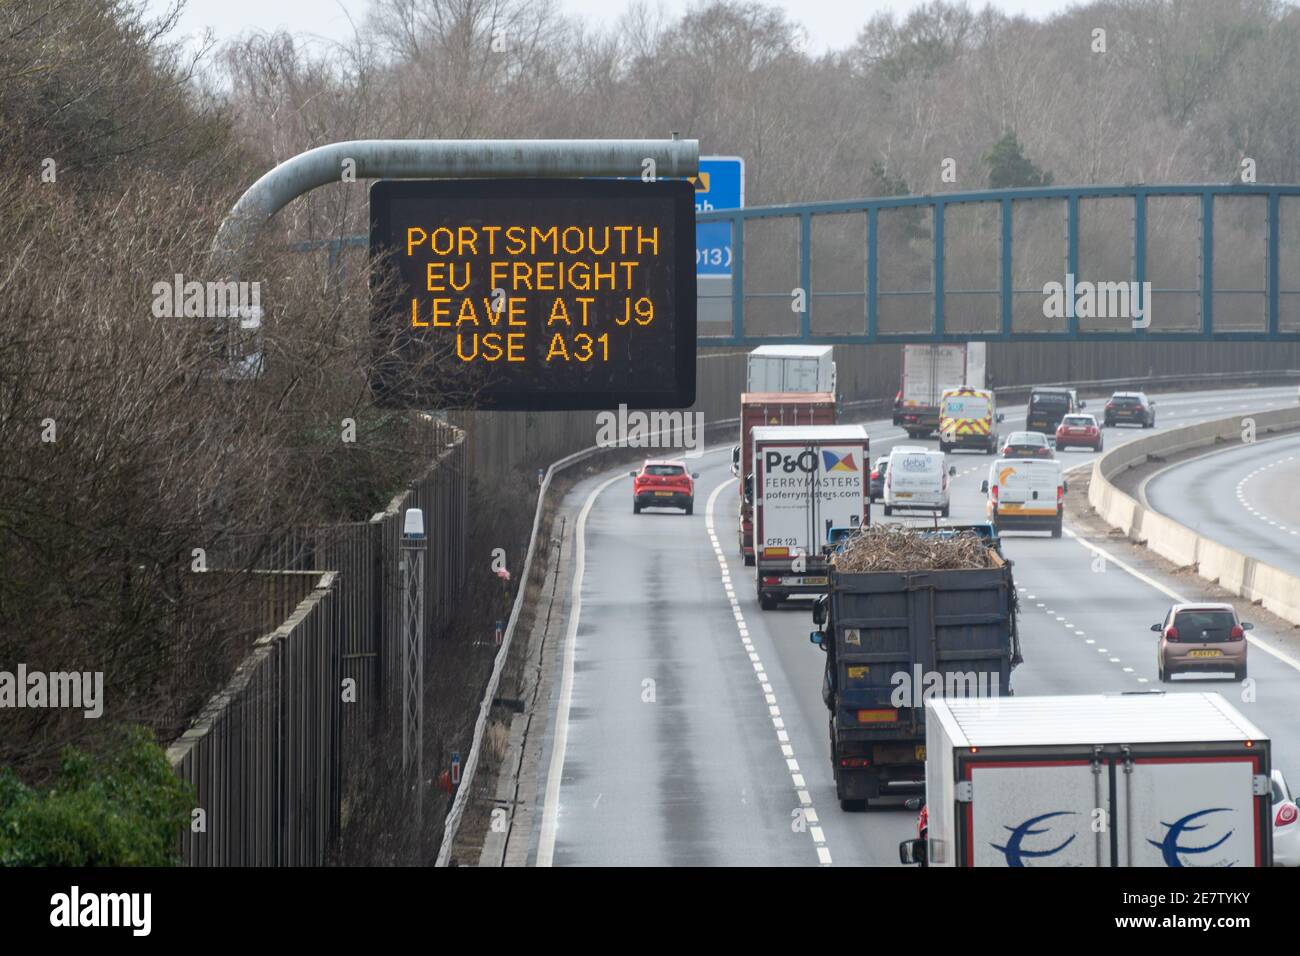 M3 panneau de l'autoroute, Portsmouth eu Freight Leave at J9 Use A31, instructions pour les camions de camion en direction de l'Europe après le Brexit, janvier 2021 Angleterre Royaume-Uni Banque D'Images